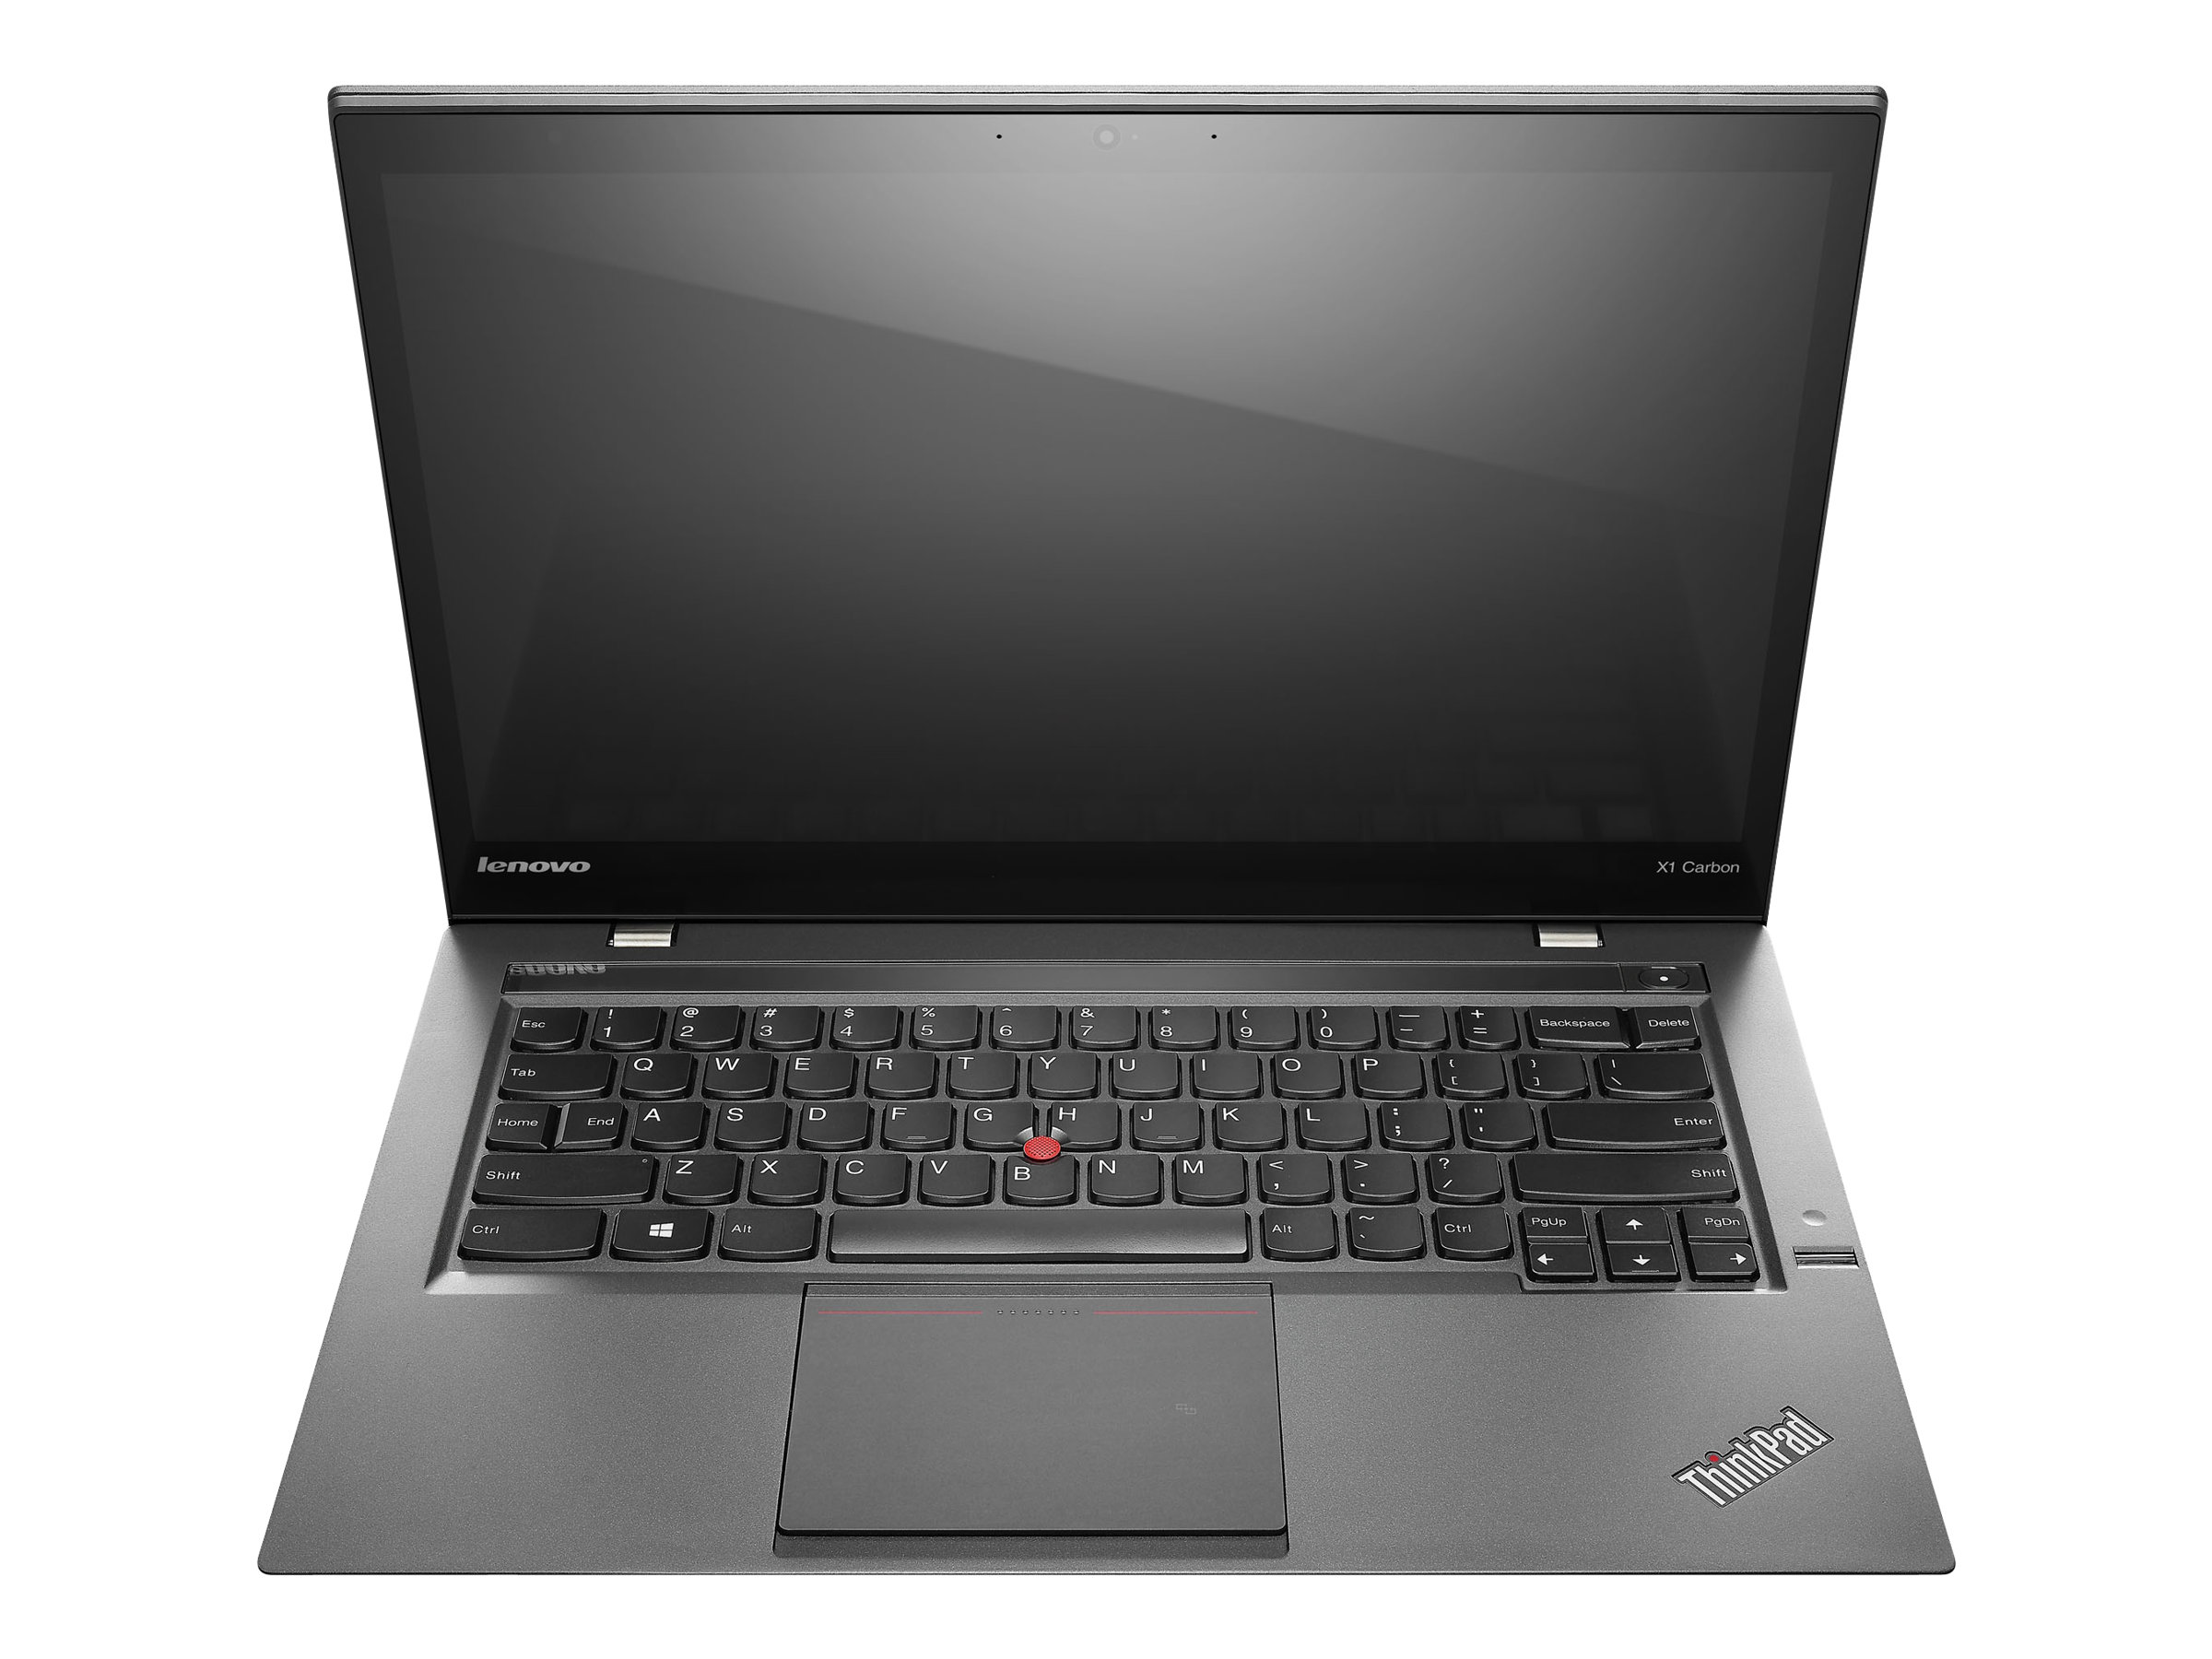 Lenovo ThinkPad X1 Carbon (1st Gen) (3448) - full specs, details 